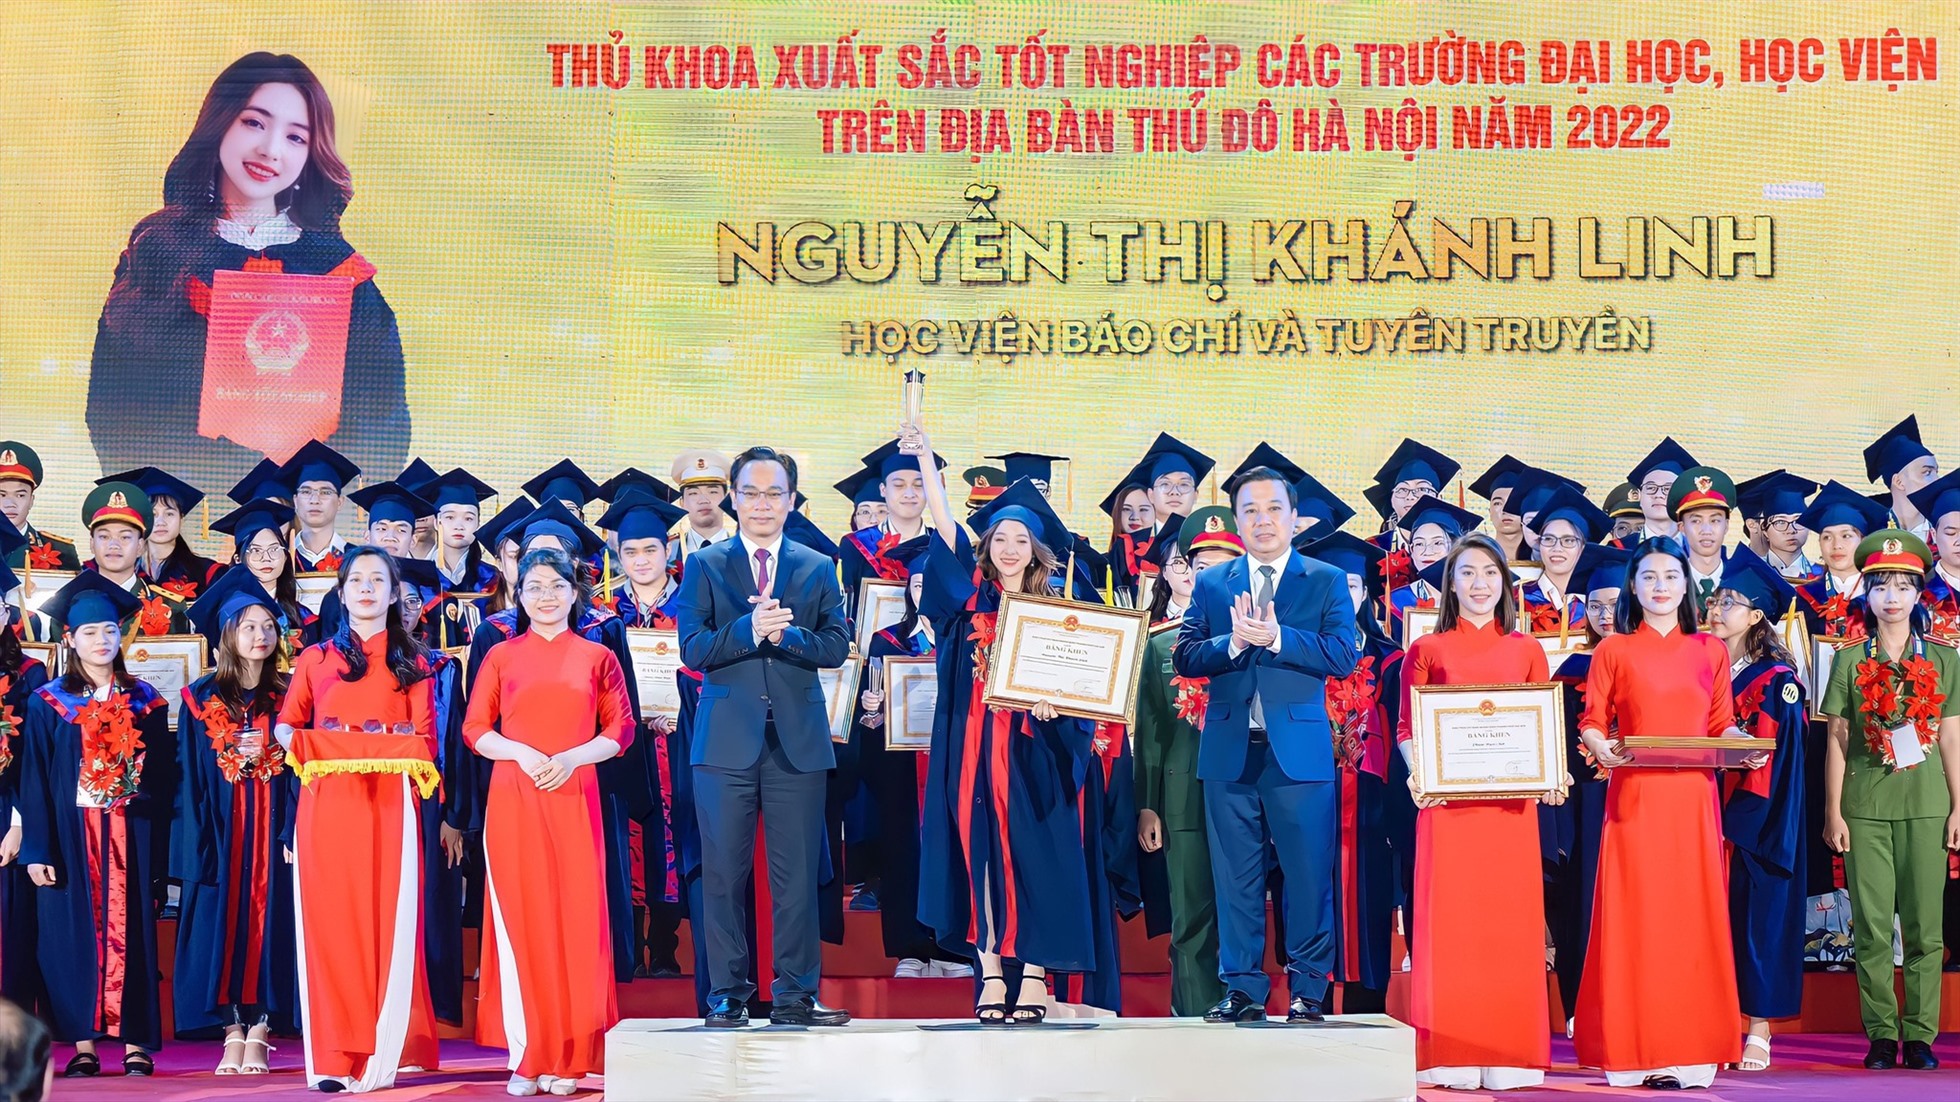 Khánh Linh trở thành thủ khoa đầu ra toàn khóa K38 Học viện Báo chí và Tuyên truyền với 3.81/4 điểm. Ảnh: Nhân vật cung cấp